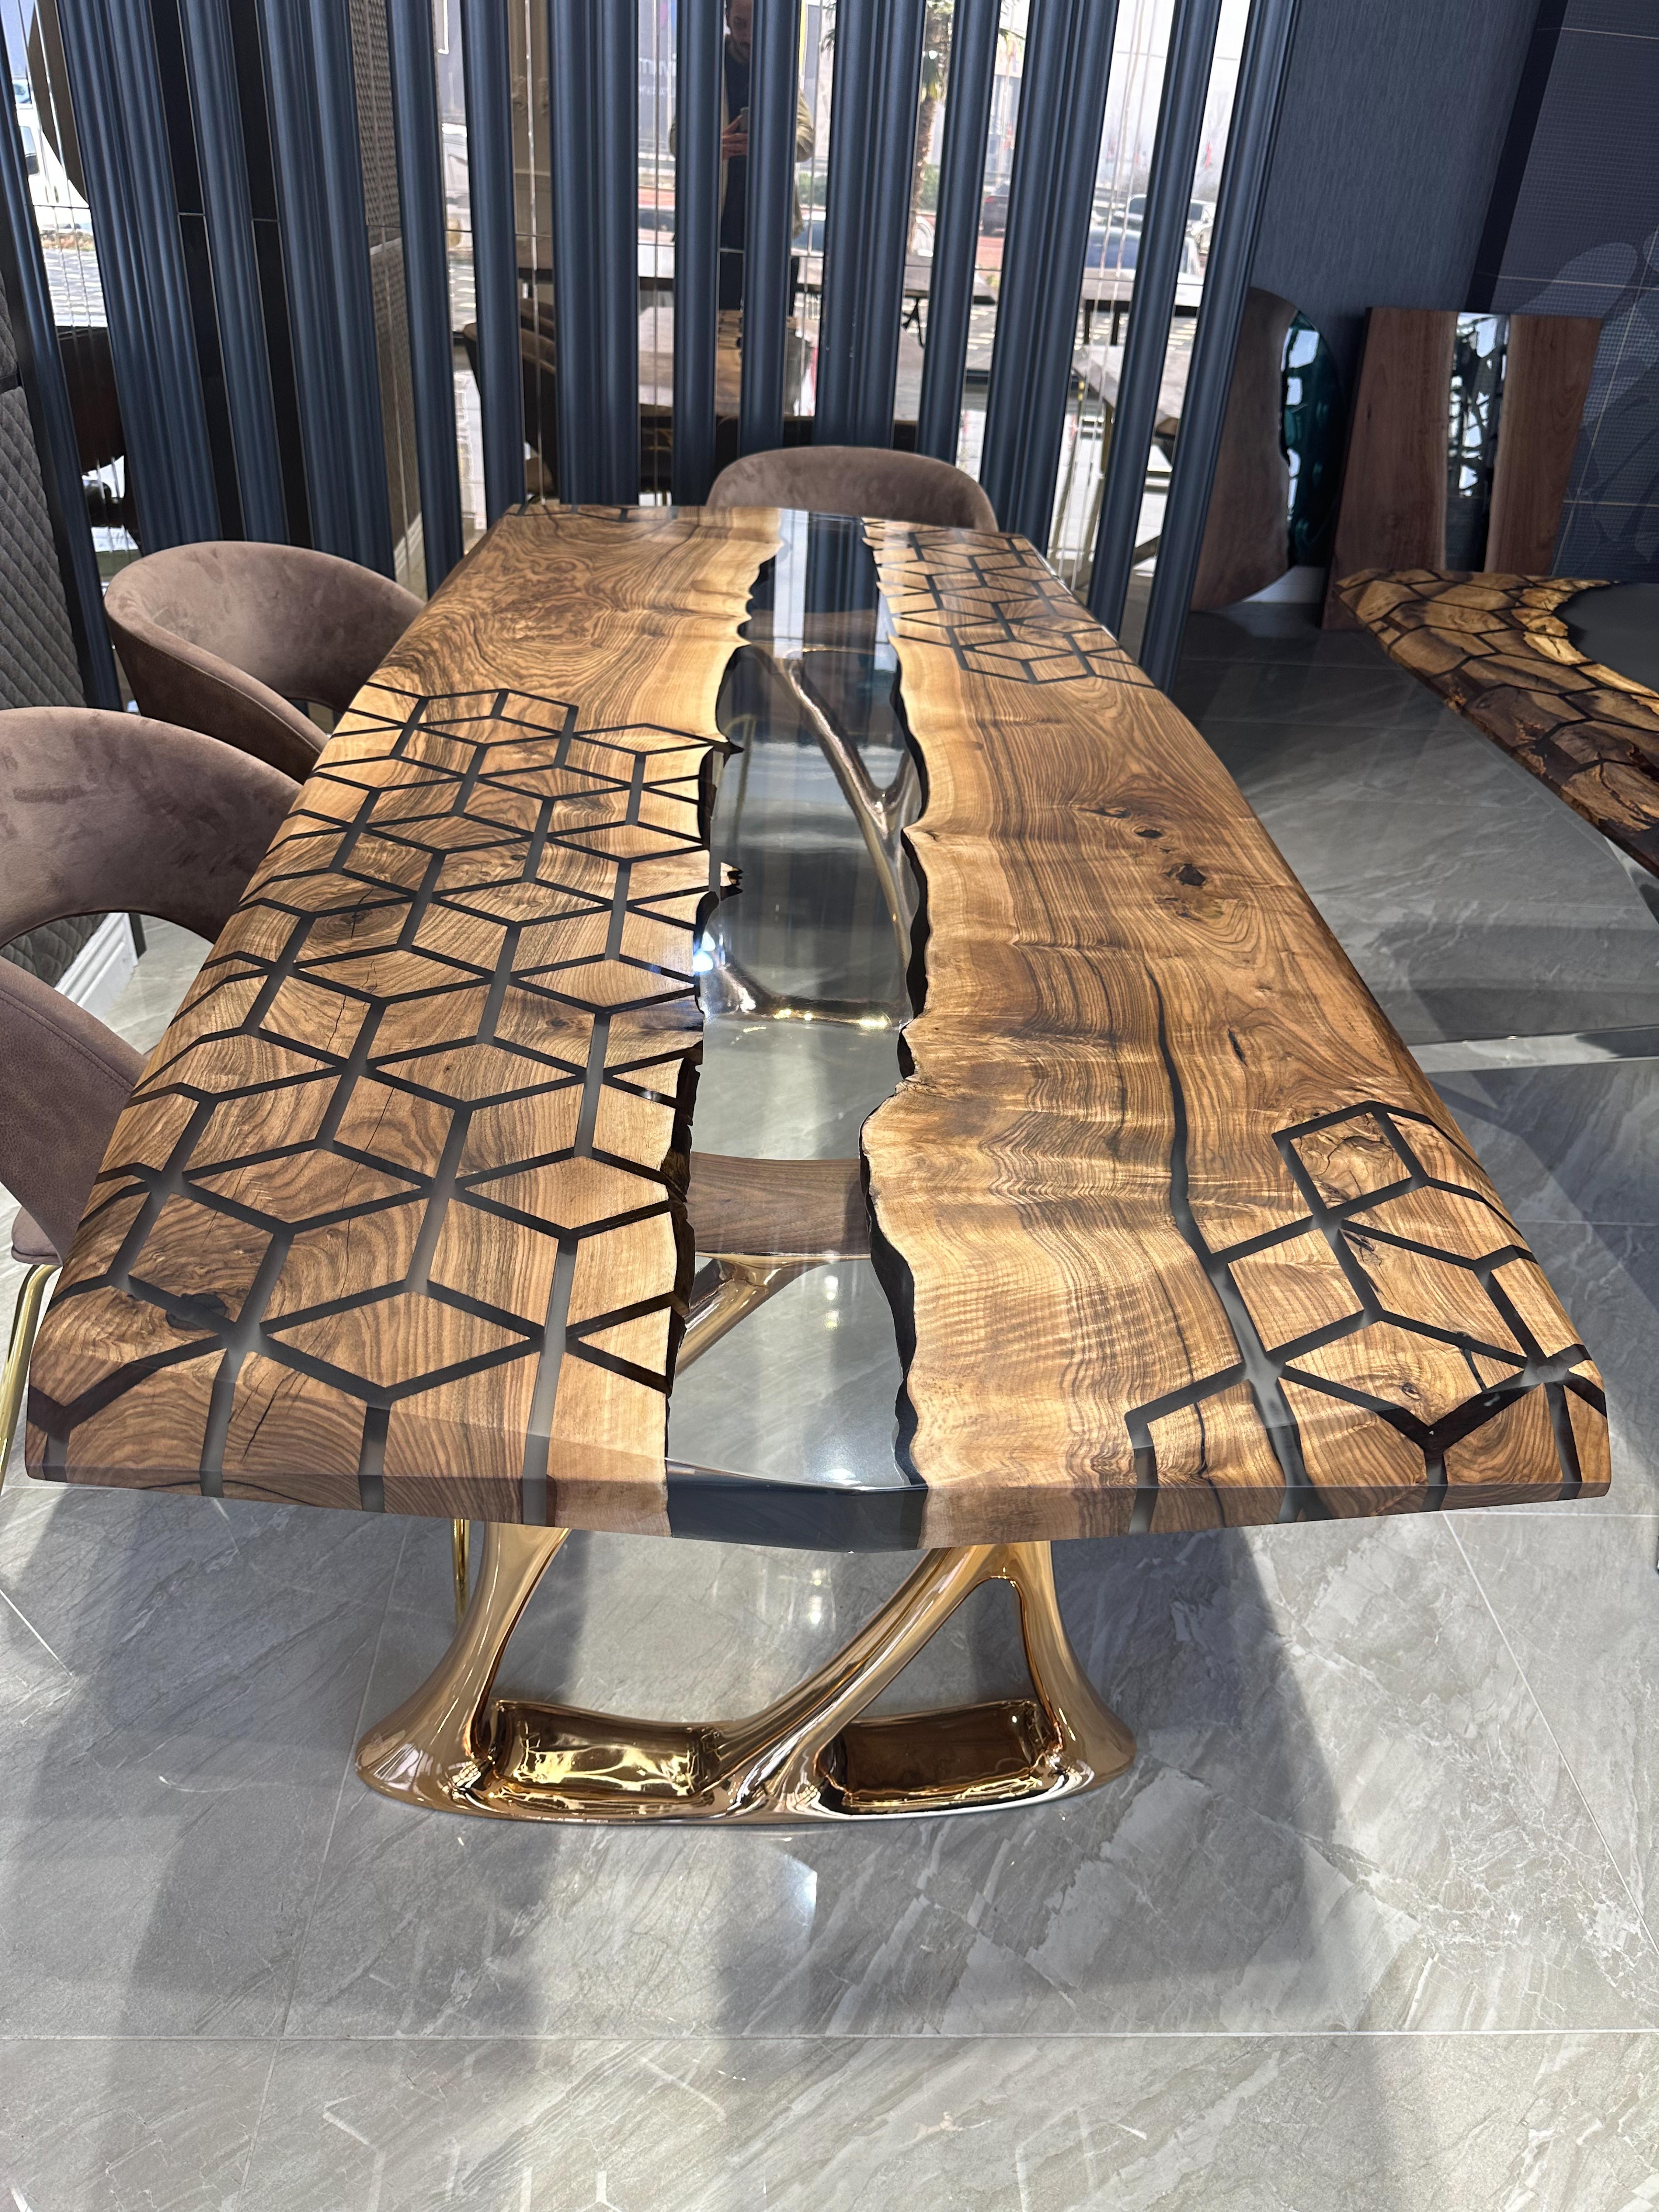 Table en résine époxy noyer

Cette table est fabriquée en bois de noyer ancien, vieux de 500 ans. Les modèles sont réalisés à l'aide de la technologie CNC. D'autres pièces sont entièrement fabriquées à la main.

Des tailles, des couleurs et des